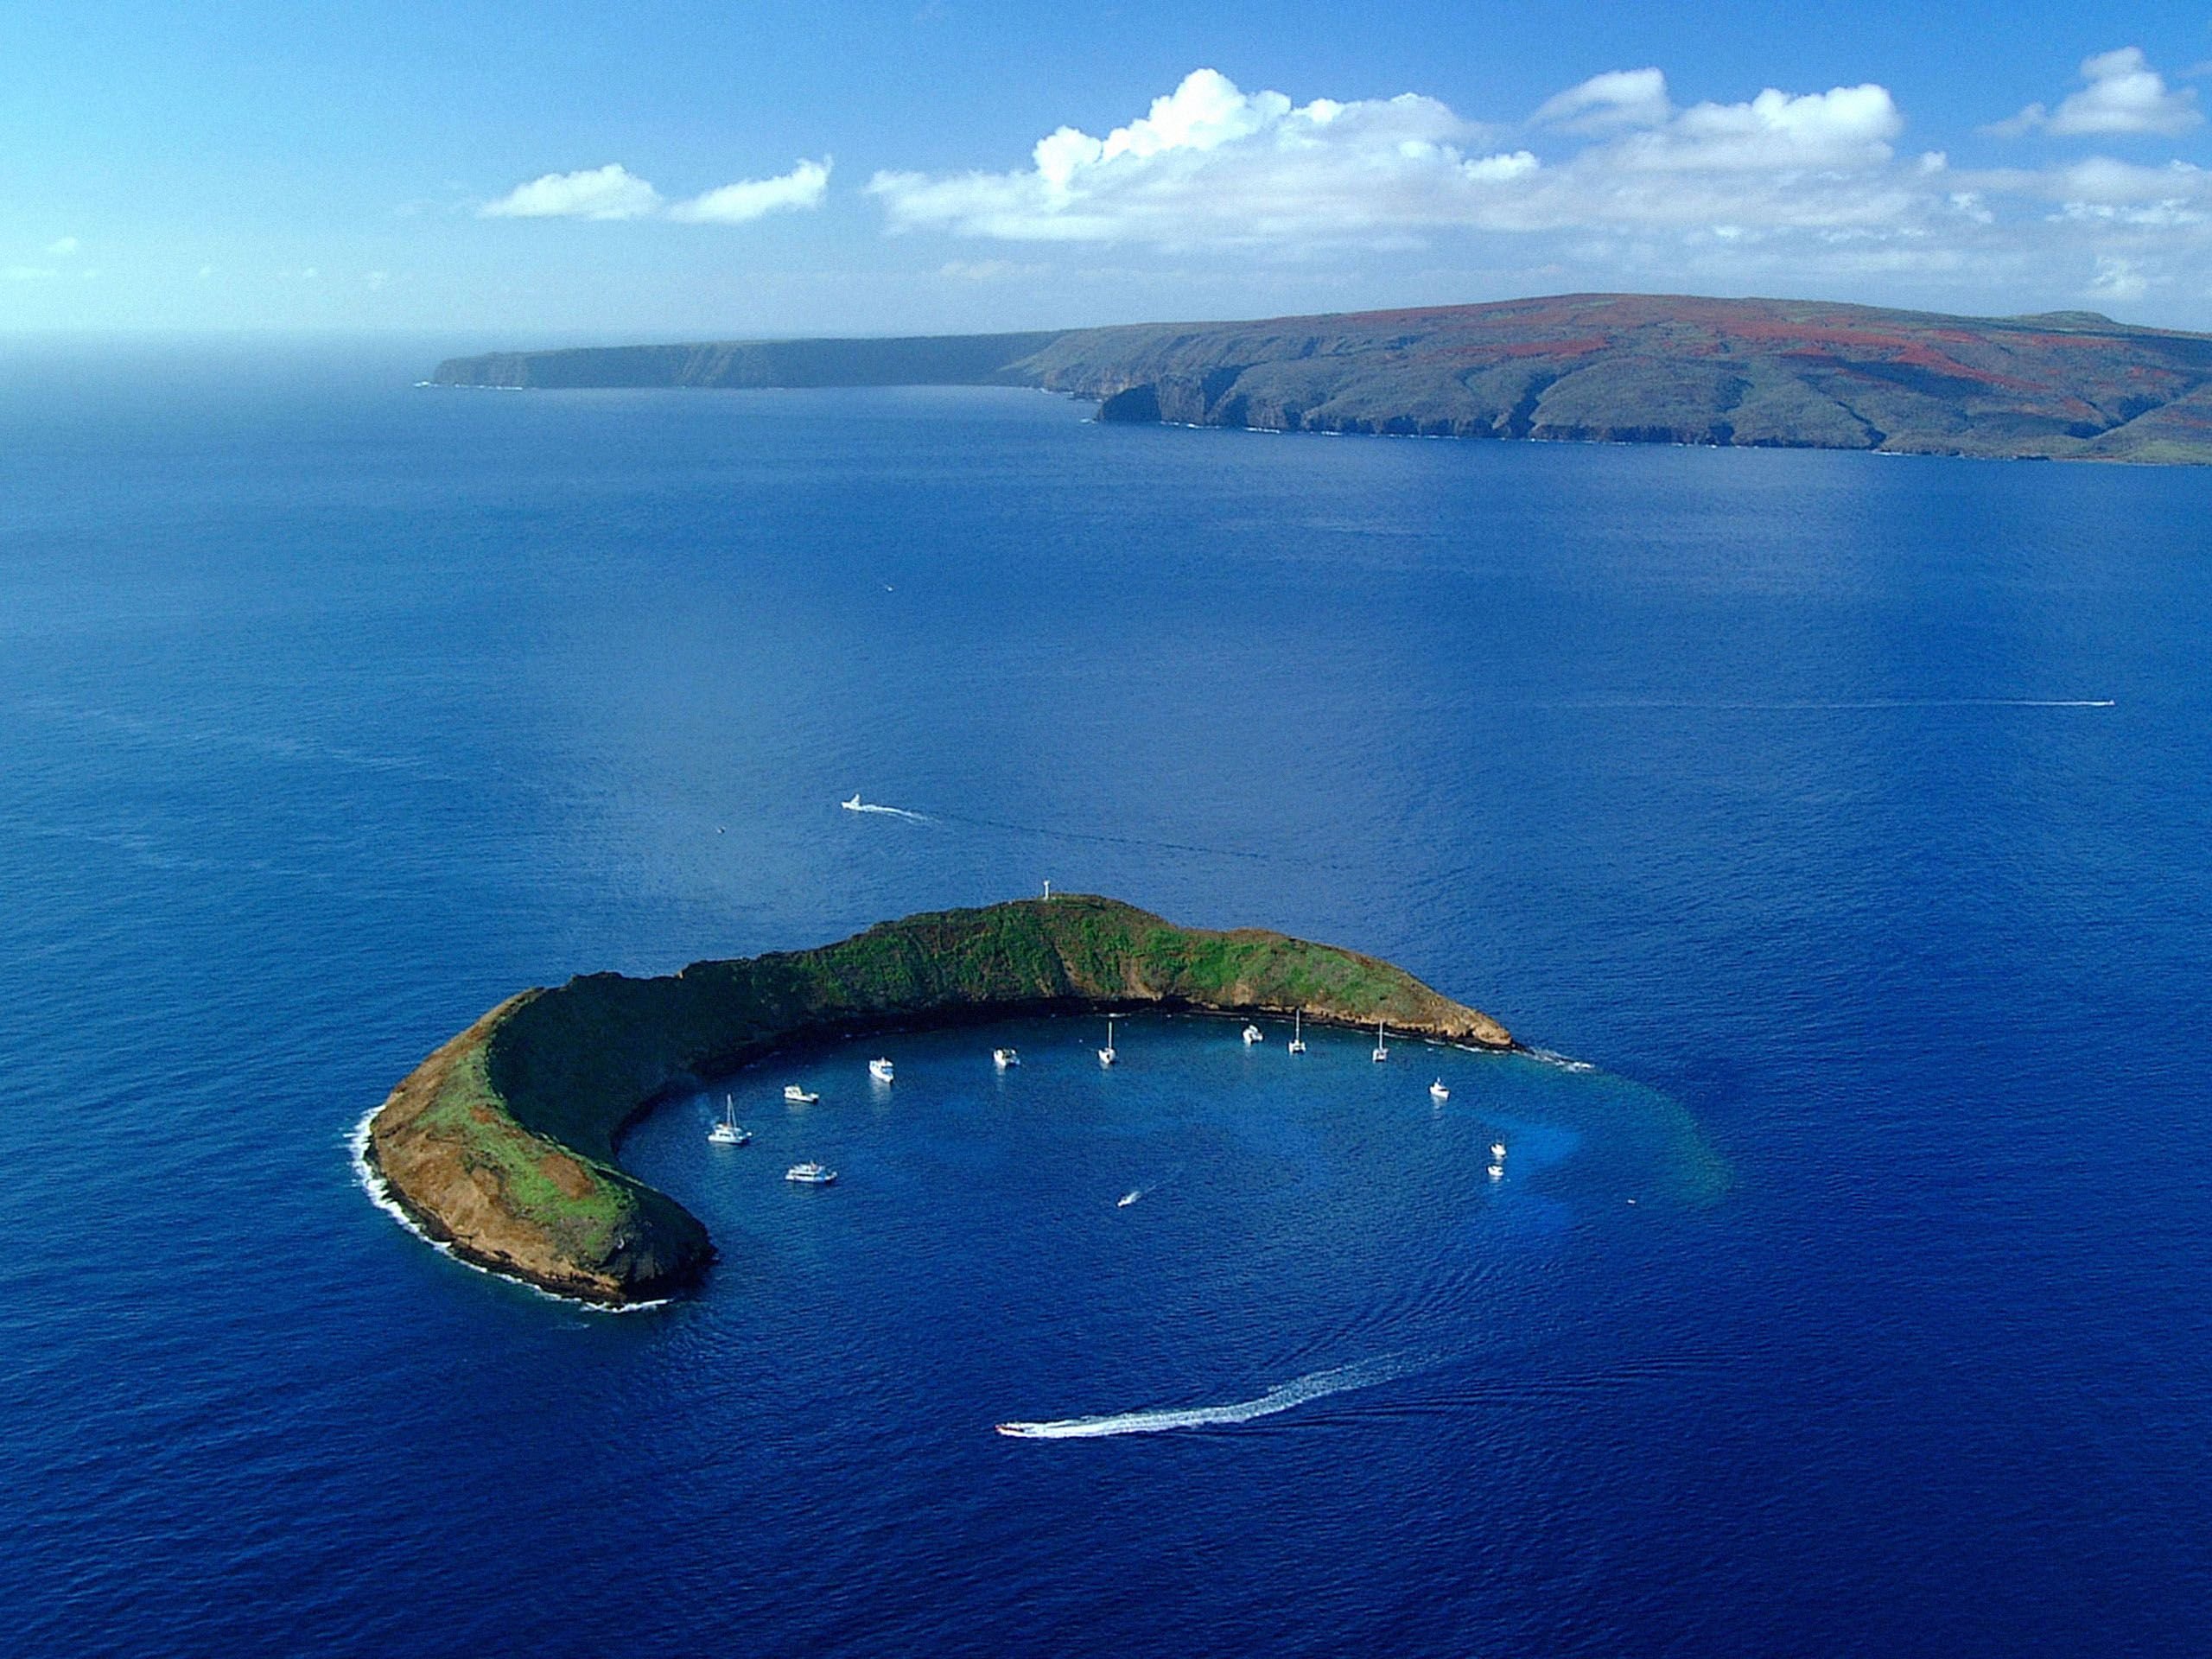 Какой остров в океане есть. Остров Молокини, Гавайи. Кратер Молокини, Гавайи. Остров Мауи Гавайи. Гавайский архипелаг остров Мауи.